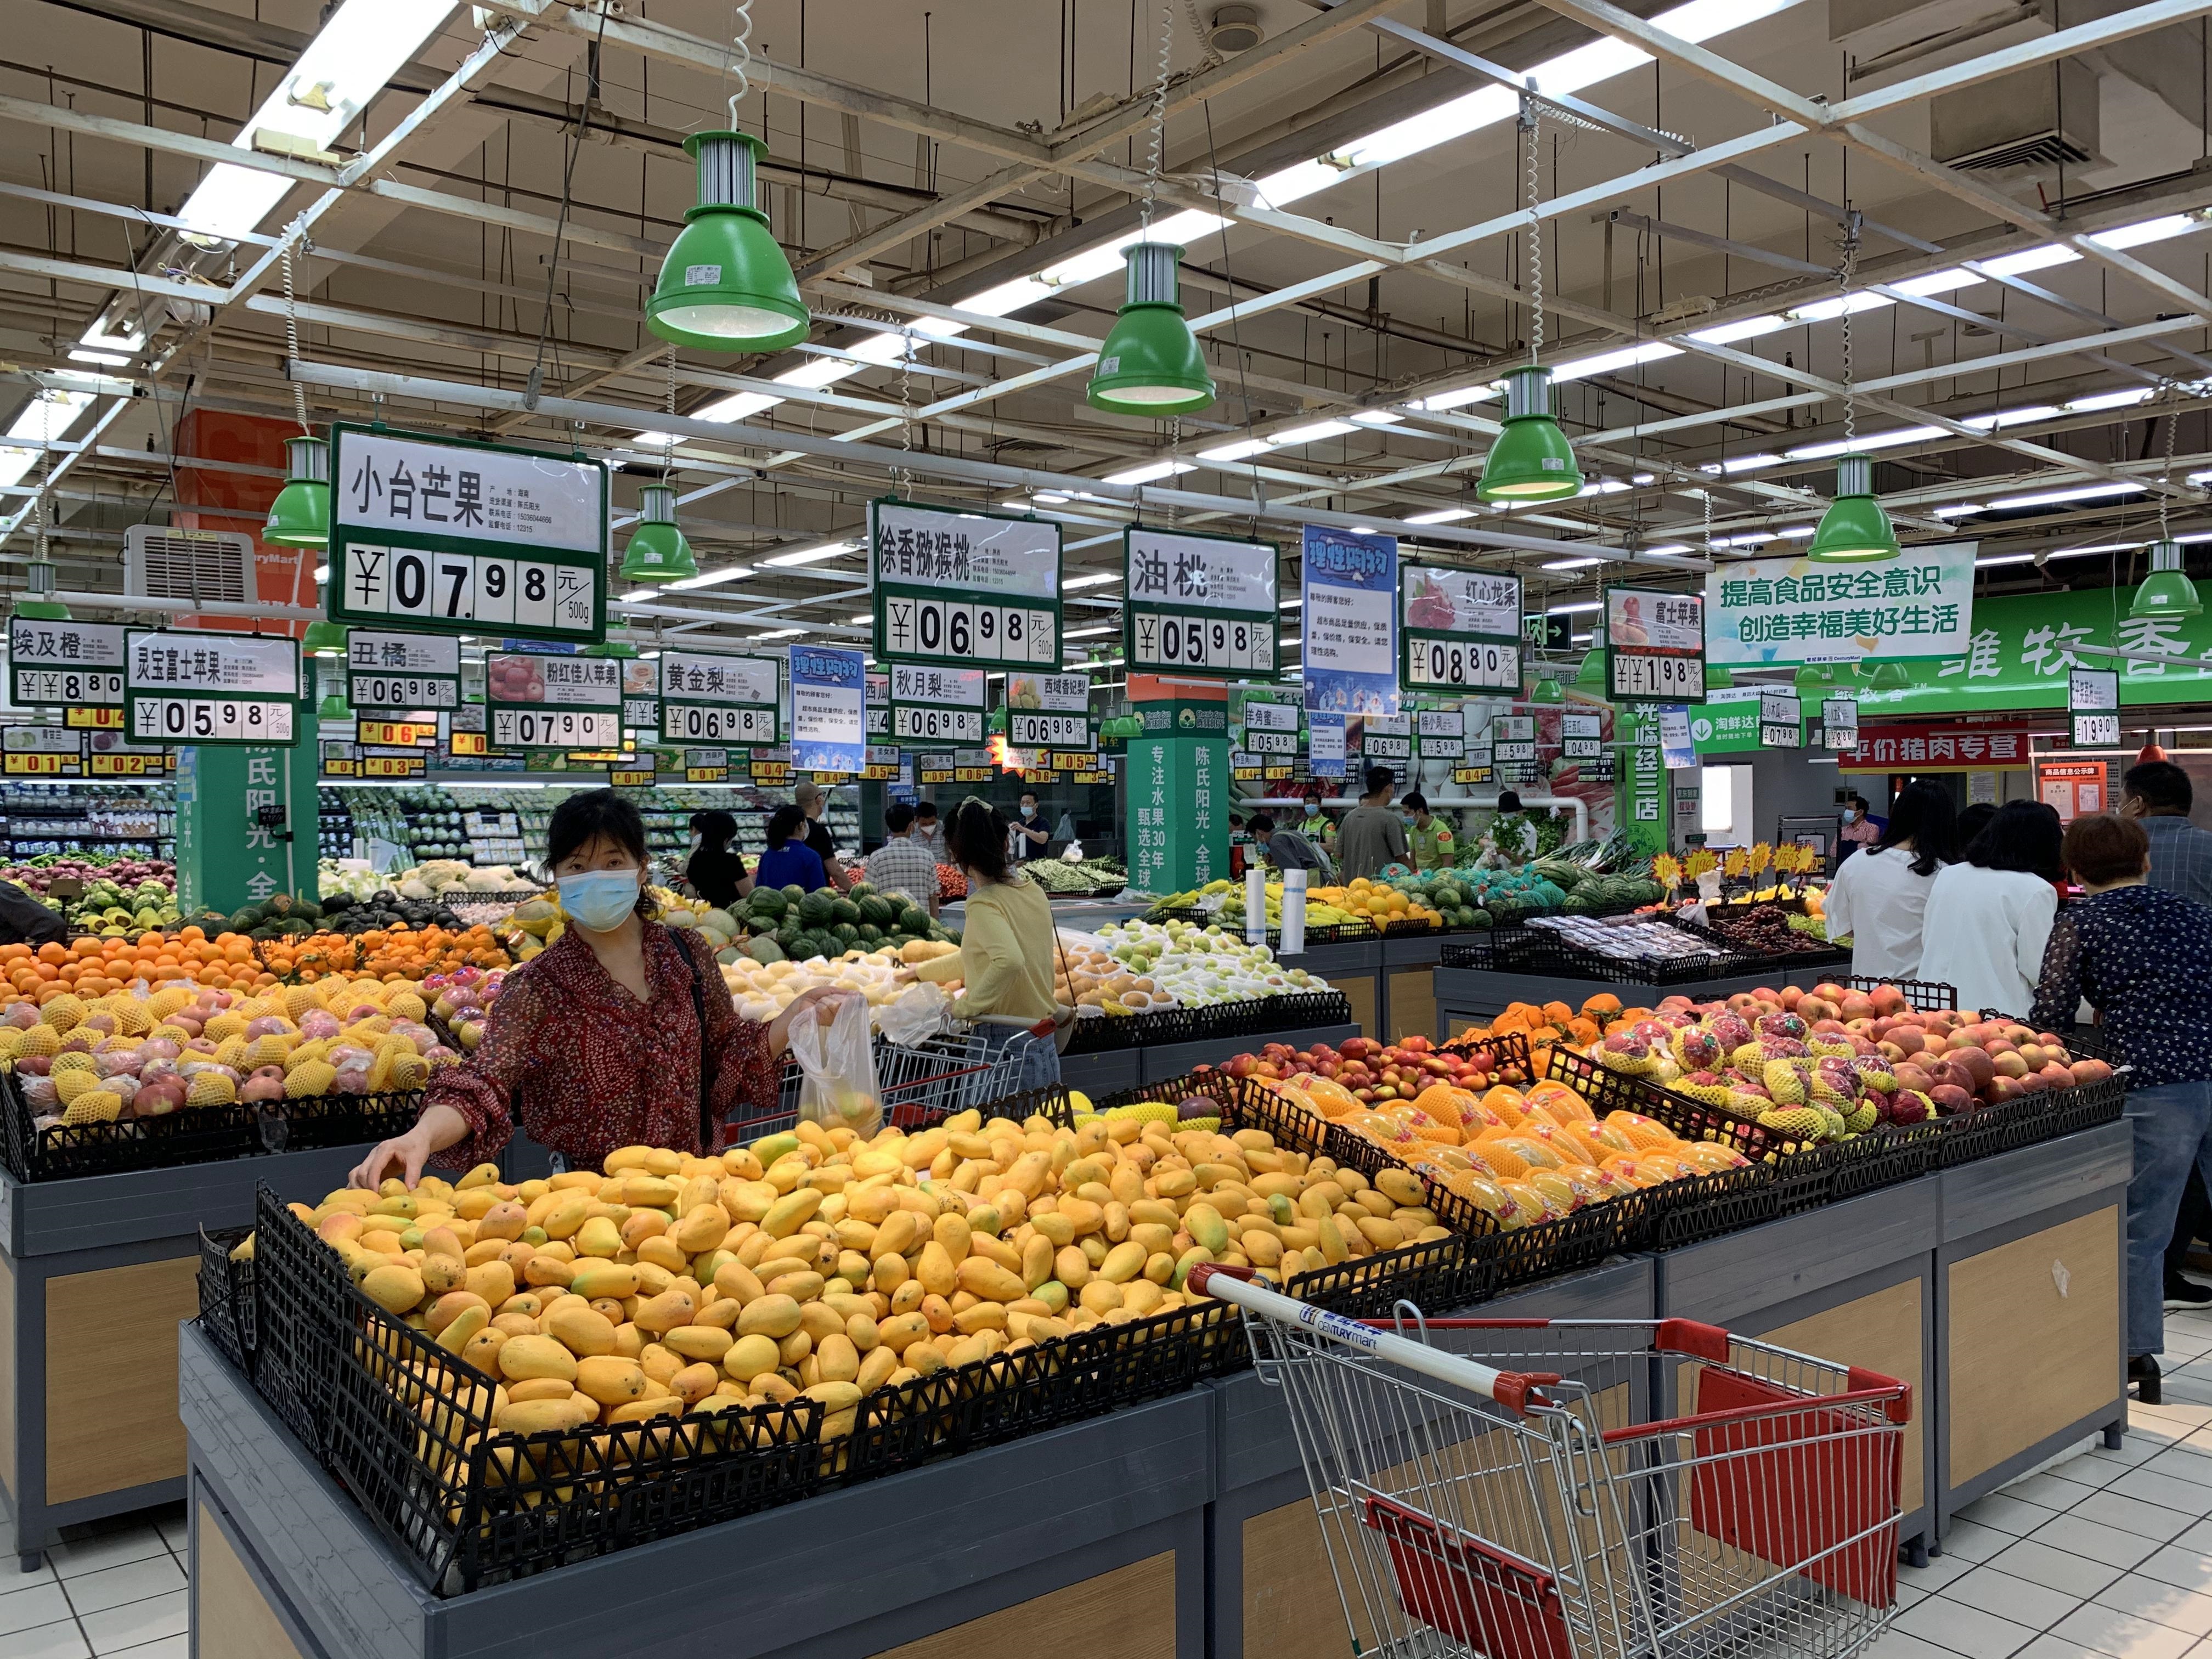 郑州超市的生活必需品供应是否充足？商品供应充足，购物秩序井然